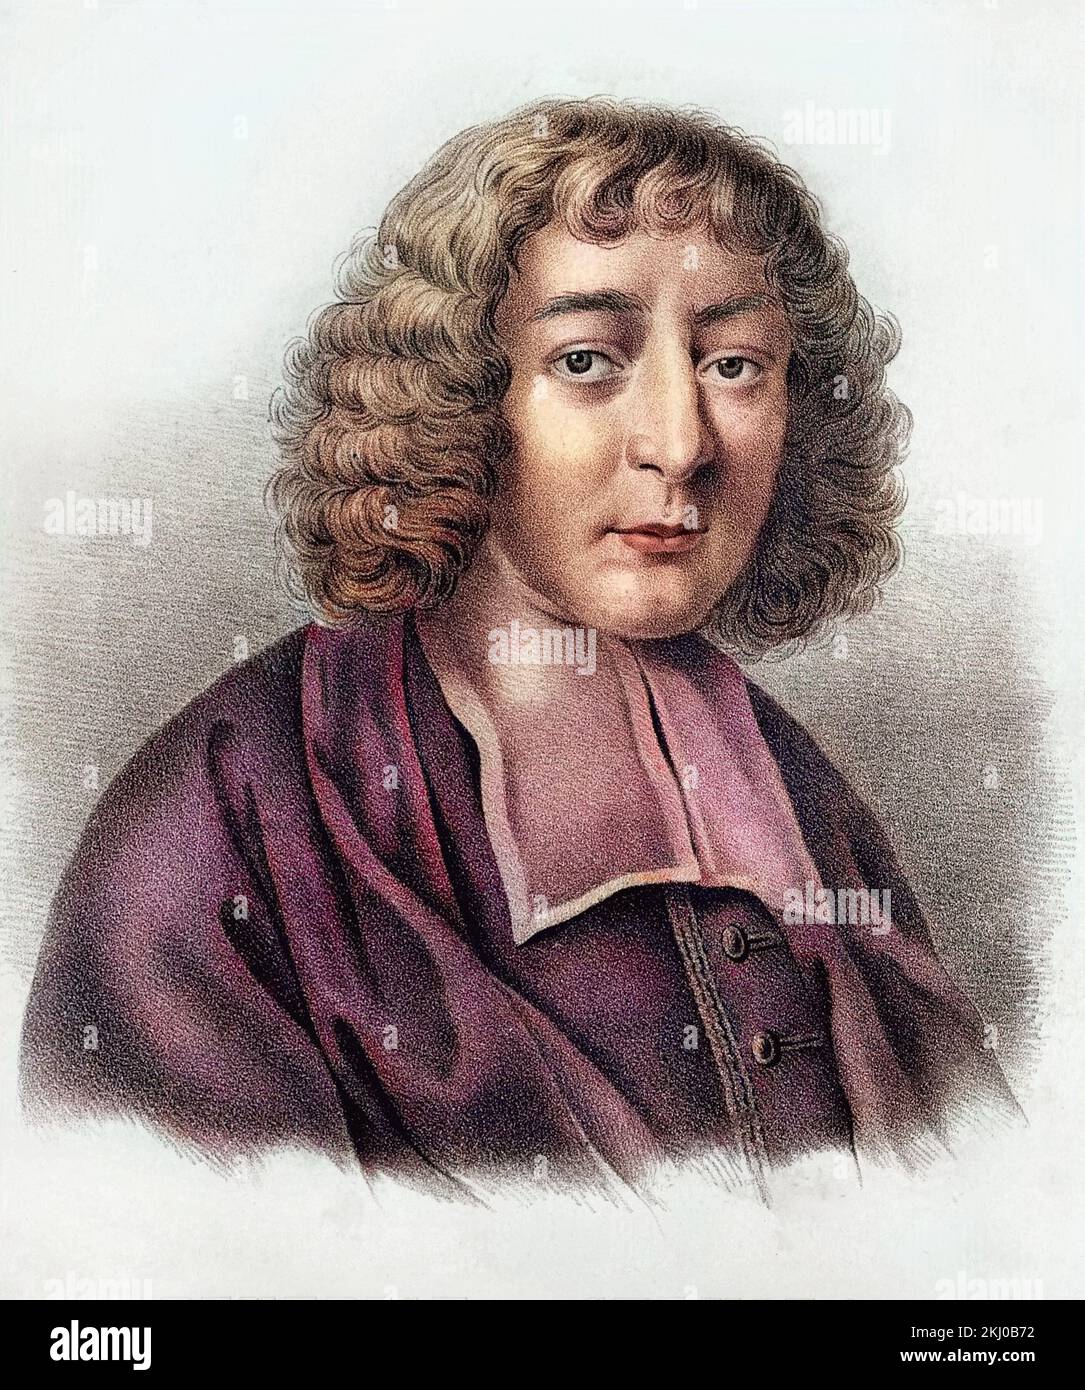 Portrait de Baruch Spinoza - philosophe hollandais (1632-1677) - Portrait de Baruch Spinoza (1632-1677), philosophie hollandaise, également connu comme Bento de Espinosa ou Benedictus de Spinoza ou Benoit de Spinoza. Banque D'Images